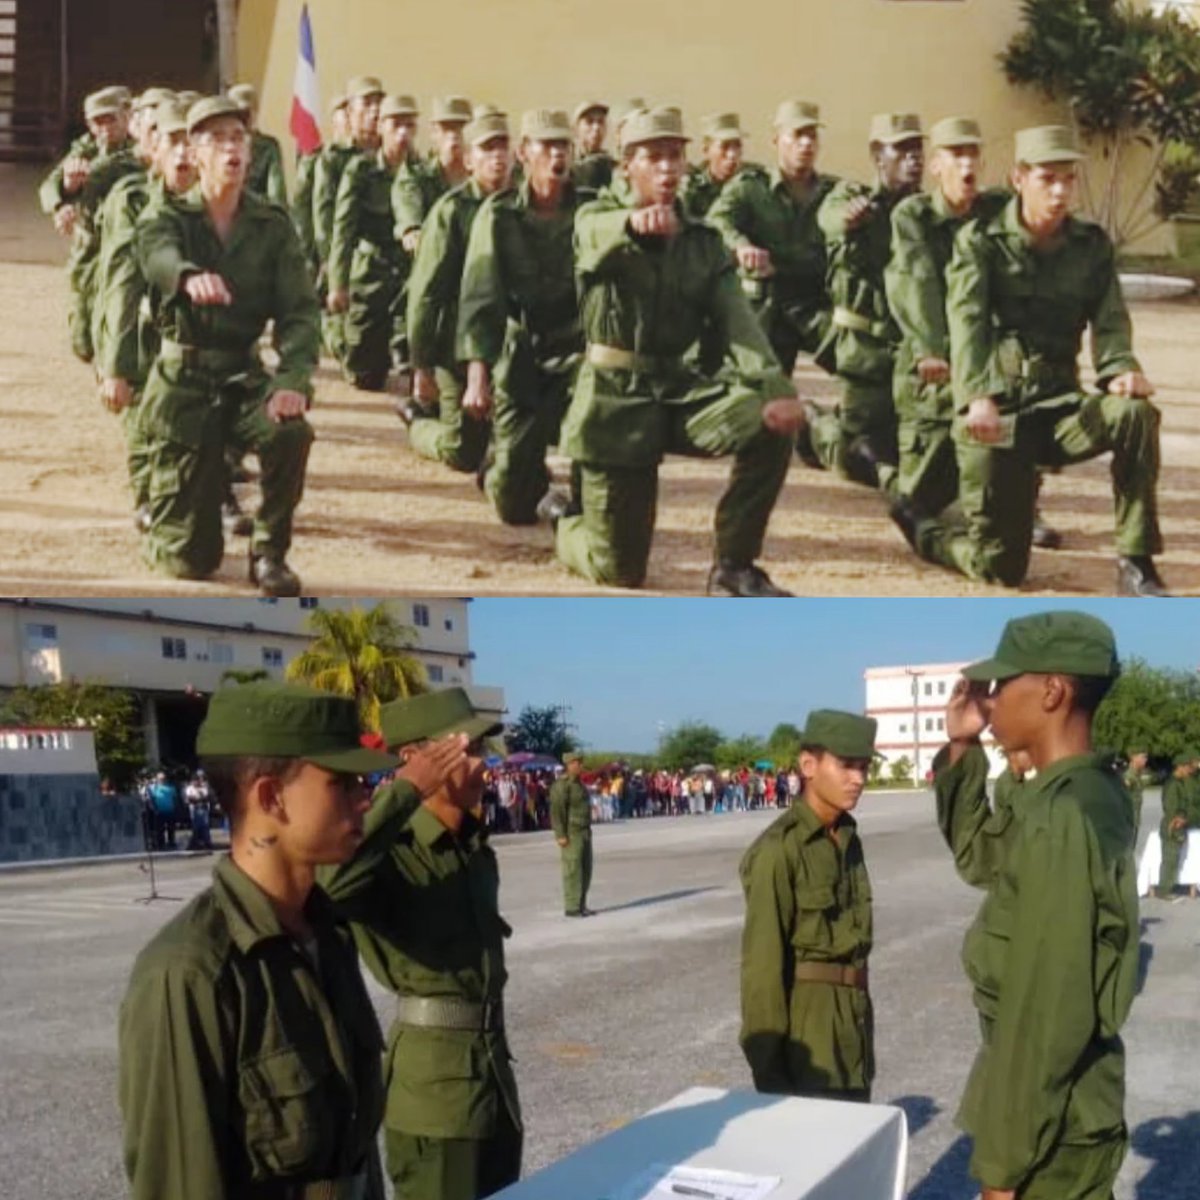 Los jóvenes soldados incorporados al Servicio Militar Activo, manifestaron su compromiso con la Patria al firmar el juramento en el que se expresa “la disposición a cumplir con el supremo deber de defender y servir con honor a la Patria socialista”. #Cuba